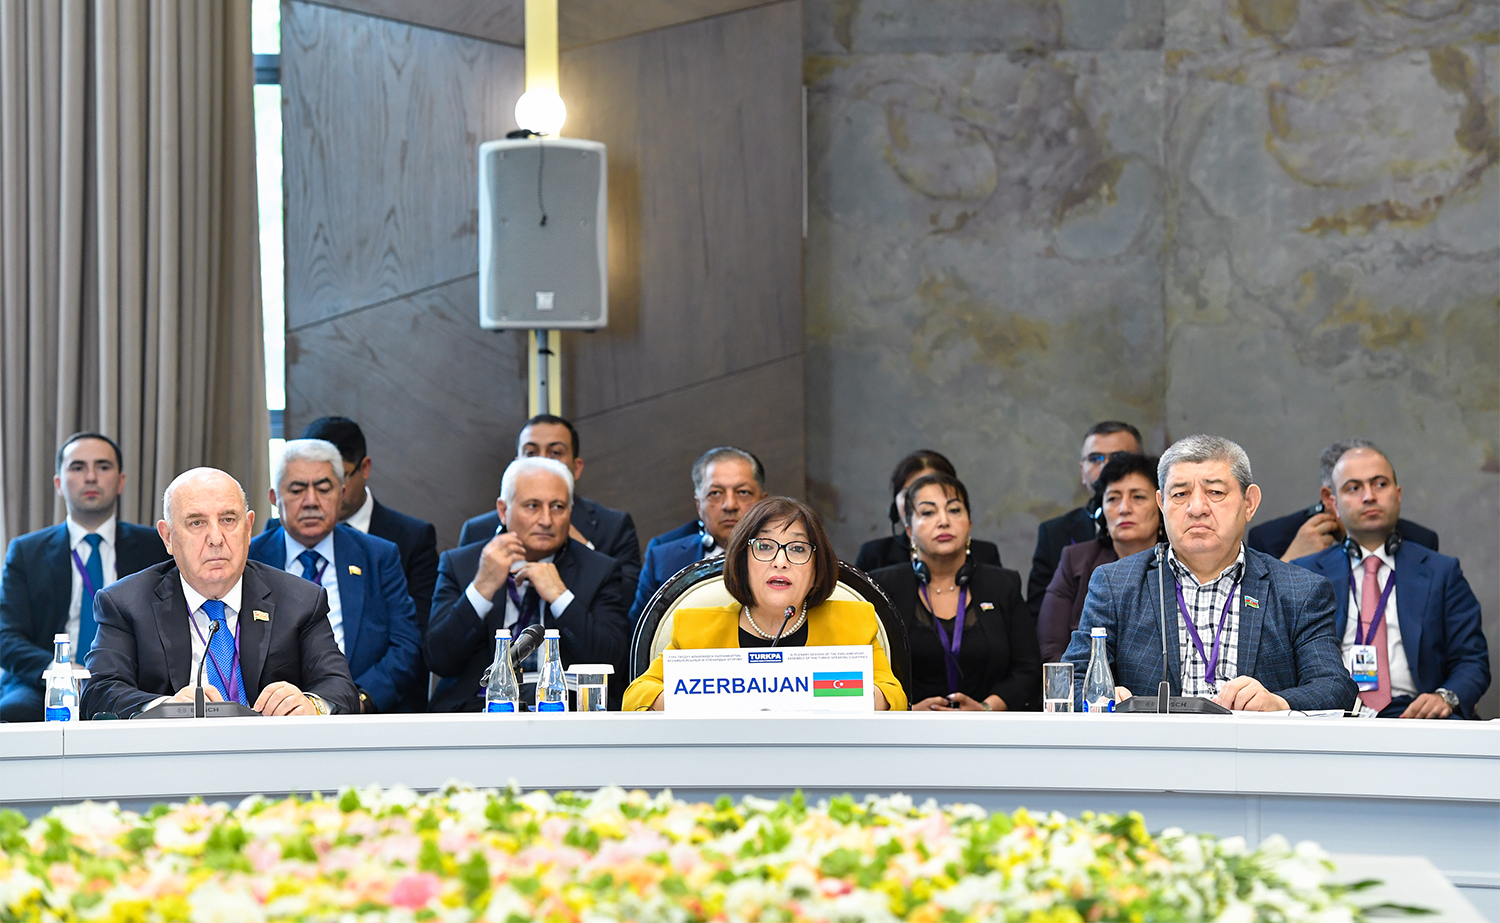 Qırğızıstanın Çolpon-Ata şəhərində Türkdilli Ölkələrin Parlament Assambleyasının 11-ci plenar iclası keçirilib